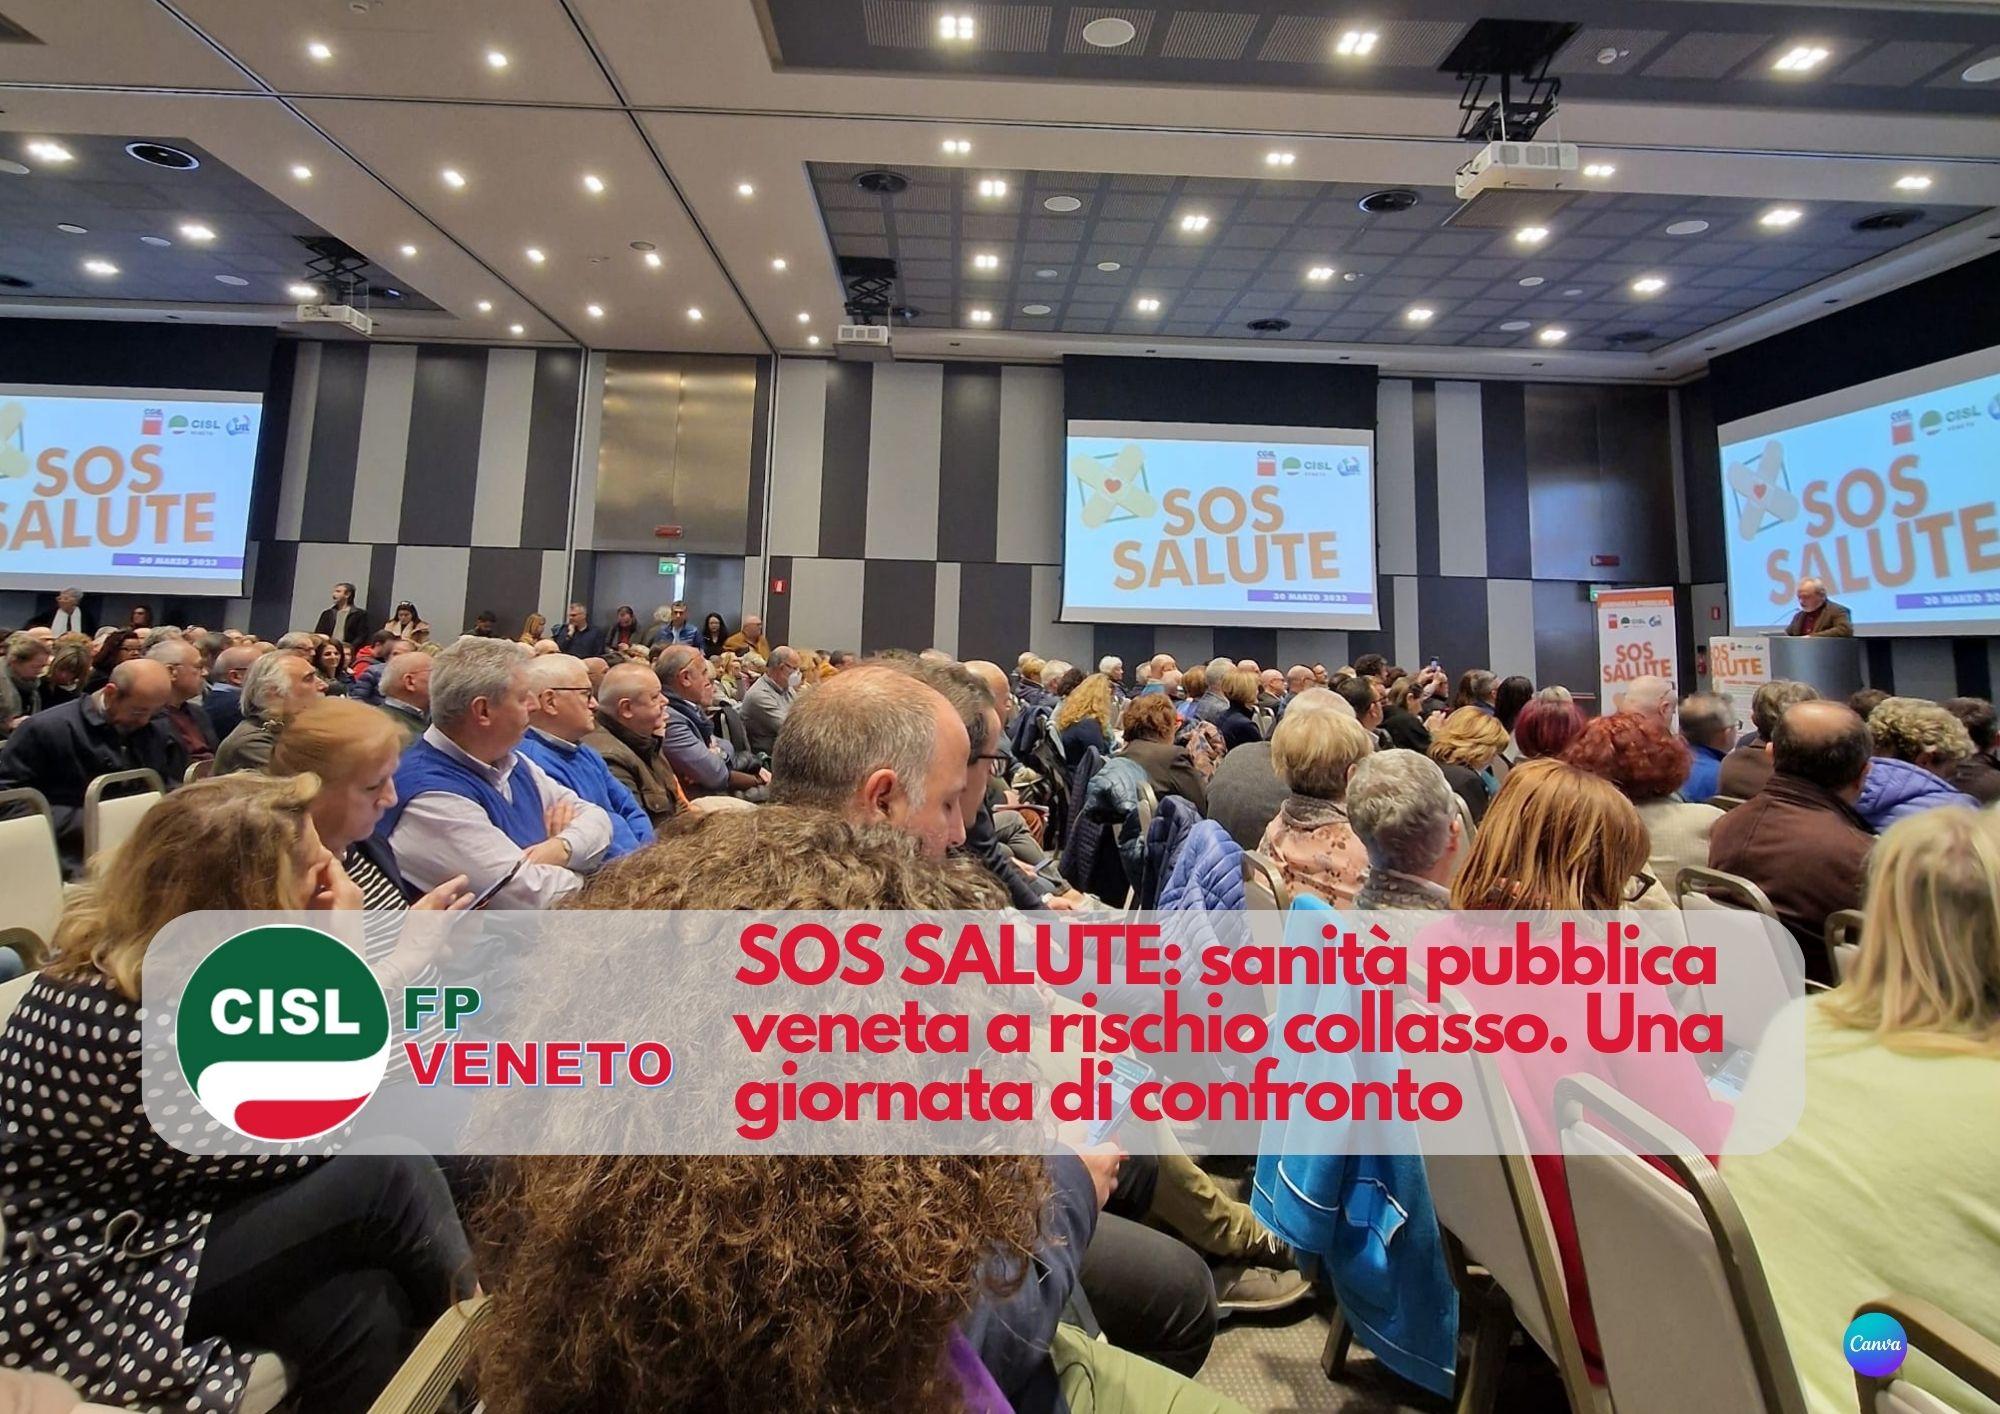 CISL FP Veneto. SOS SALUTE: sanità pubblica veneta a rischio collasso. Una giornata di confronto